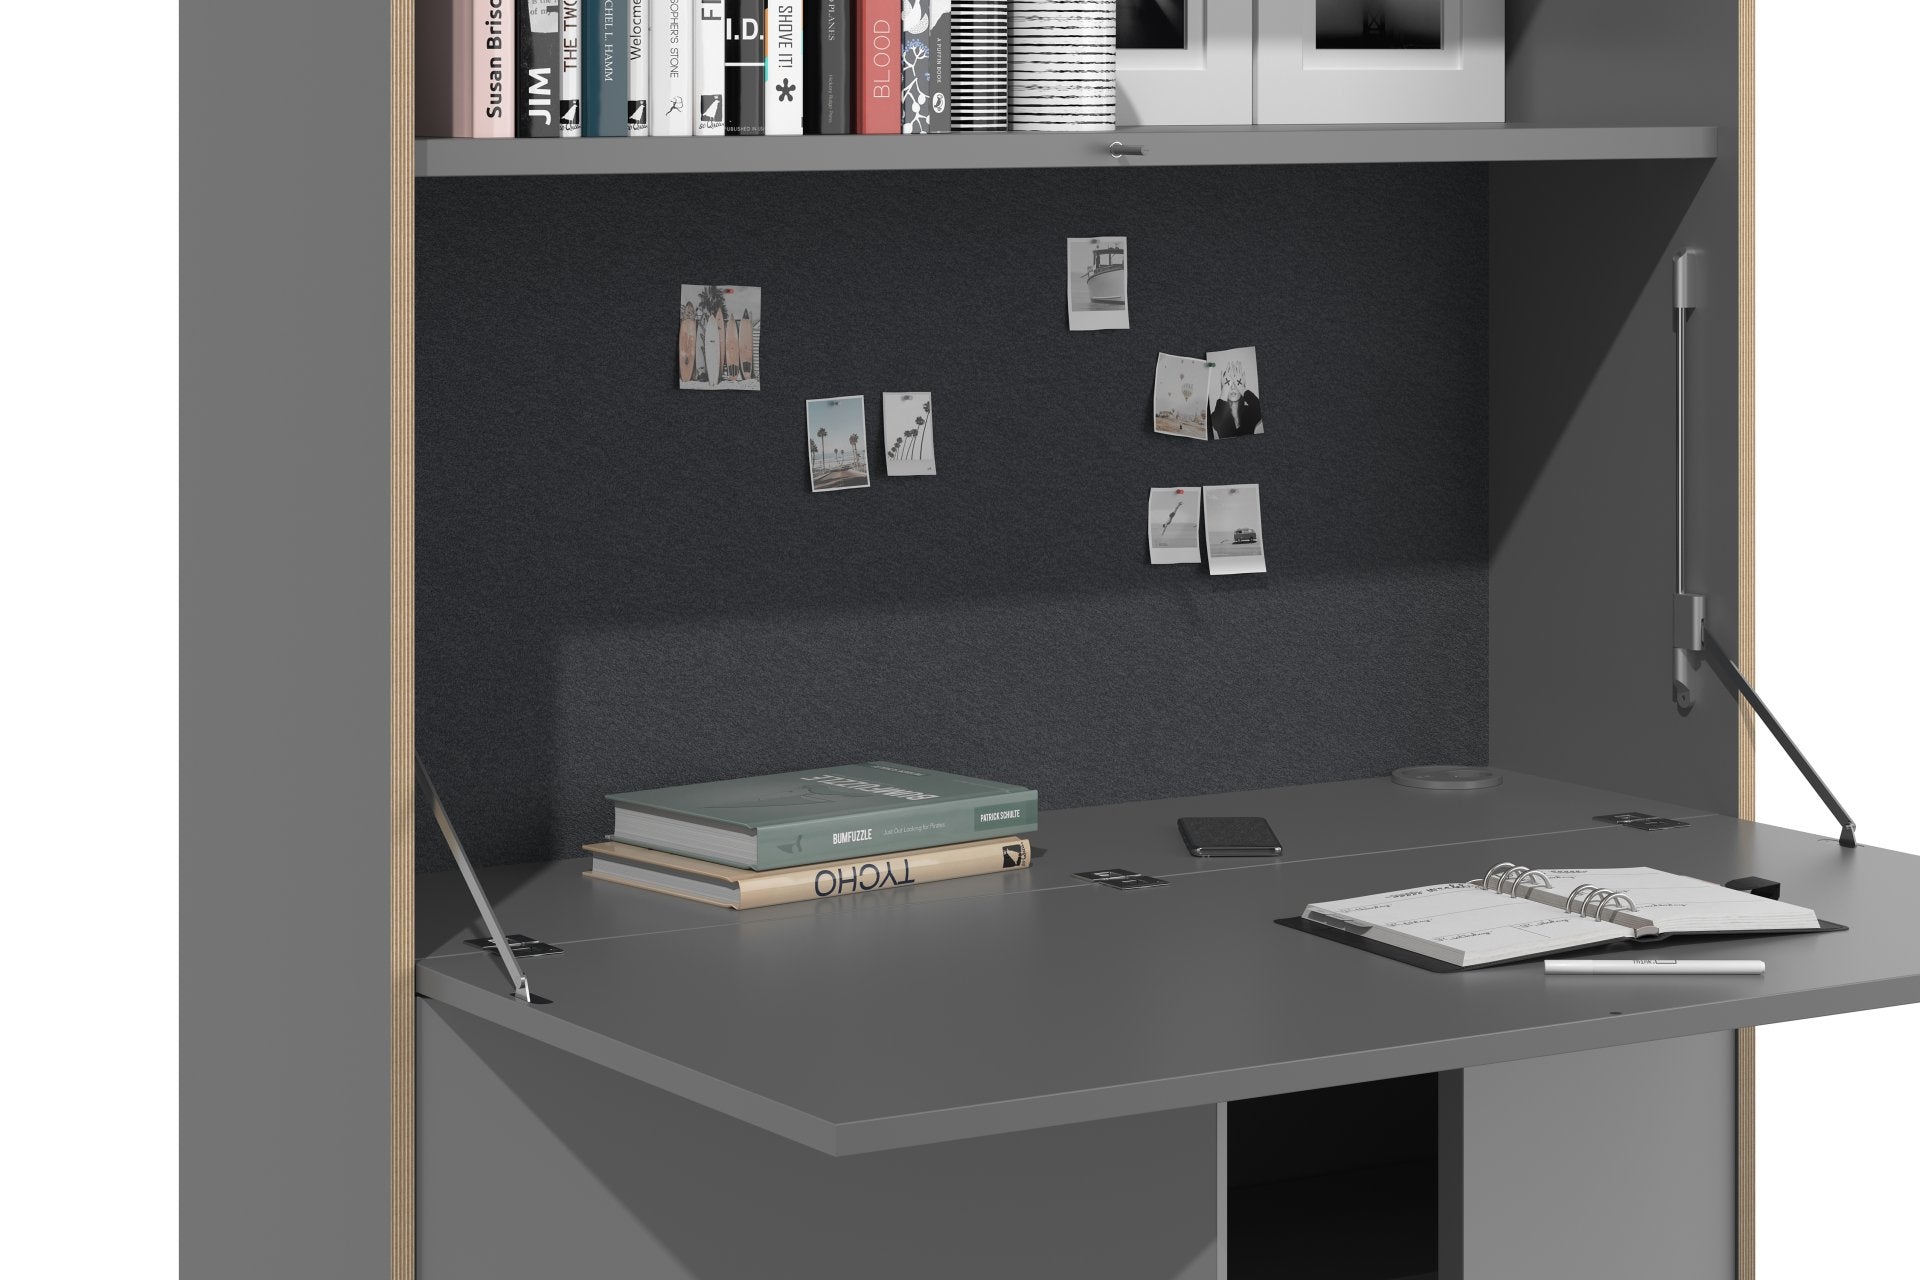 FLAI Home Office hoch in Anthrazit / Blanched Almond präsentiert im Onlineshop von KAQTU Design AG. Sekretär ist von Müller Möbelwerkstätten